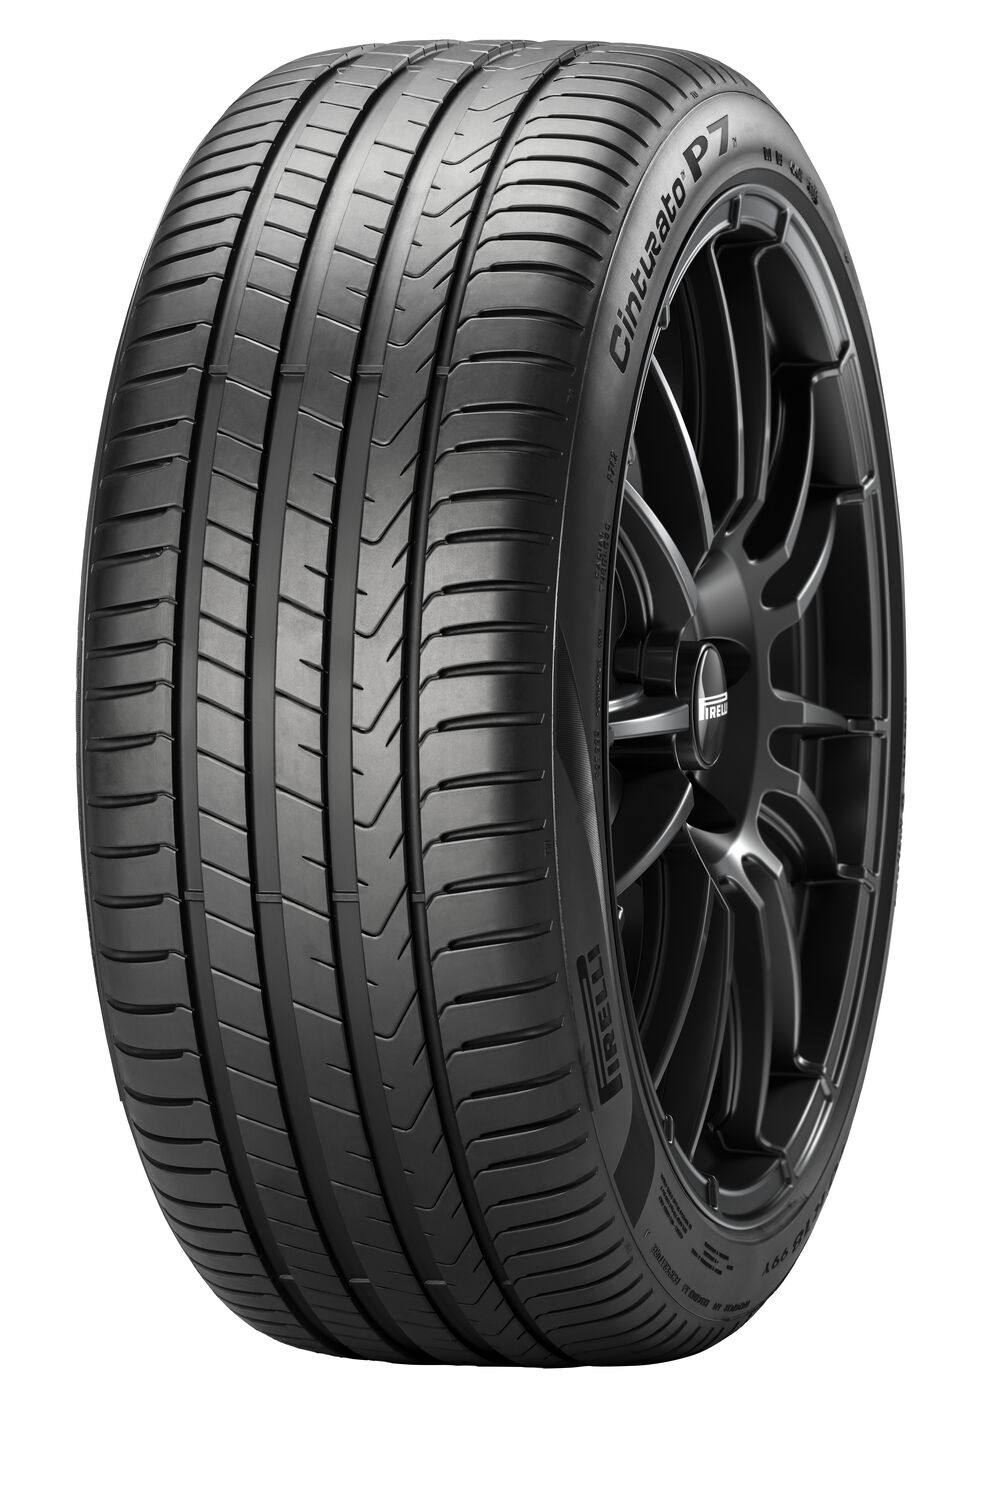 Gomme Nuove Pirelli 245/45 R18 96W CINTURATO P-7 C2 SEAL XL pneumatici nuovi Estivo